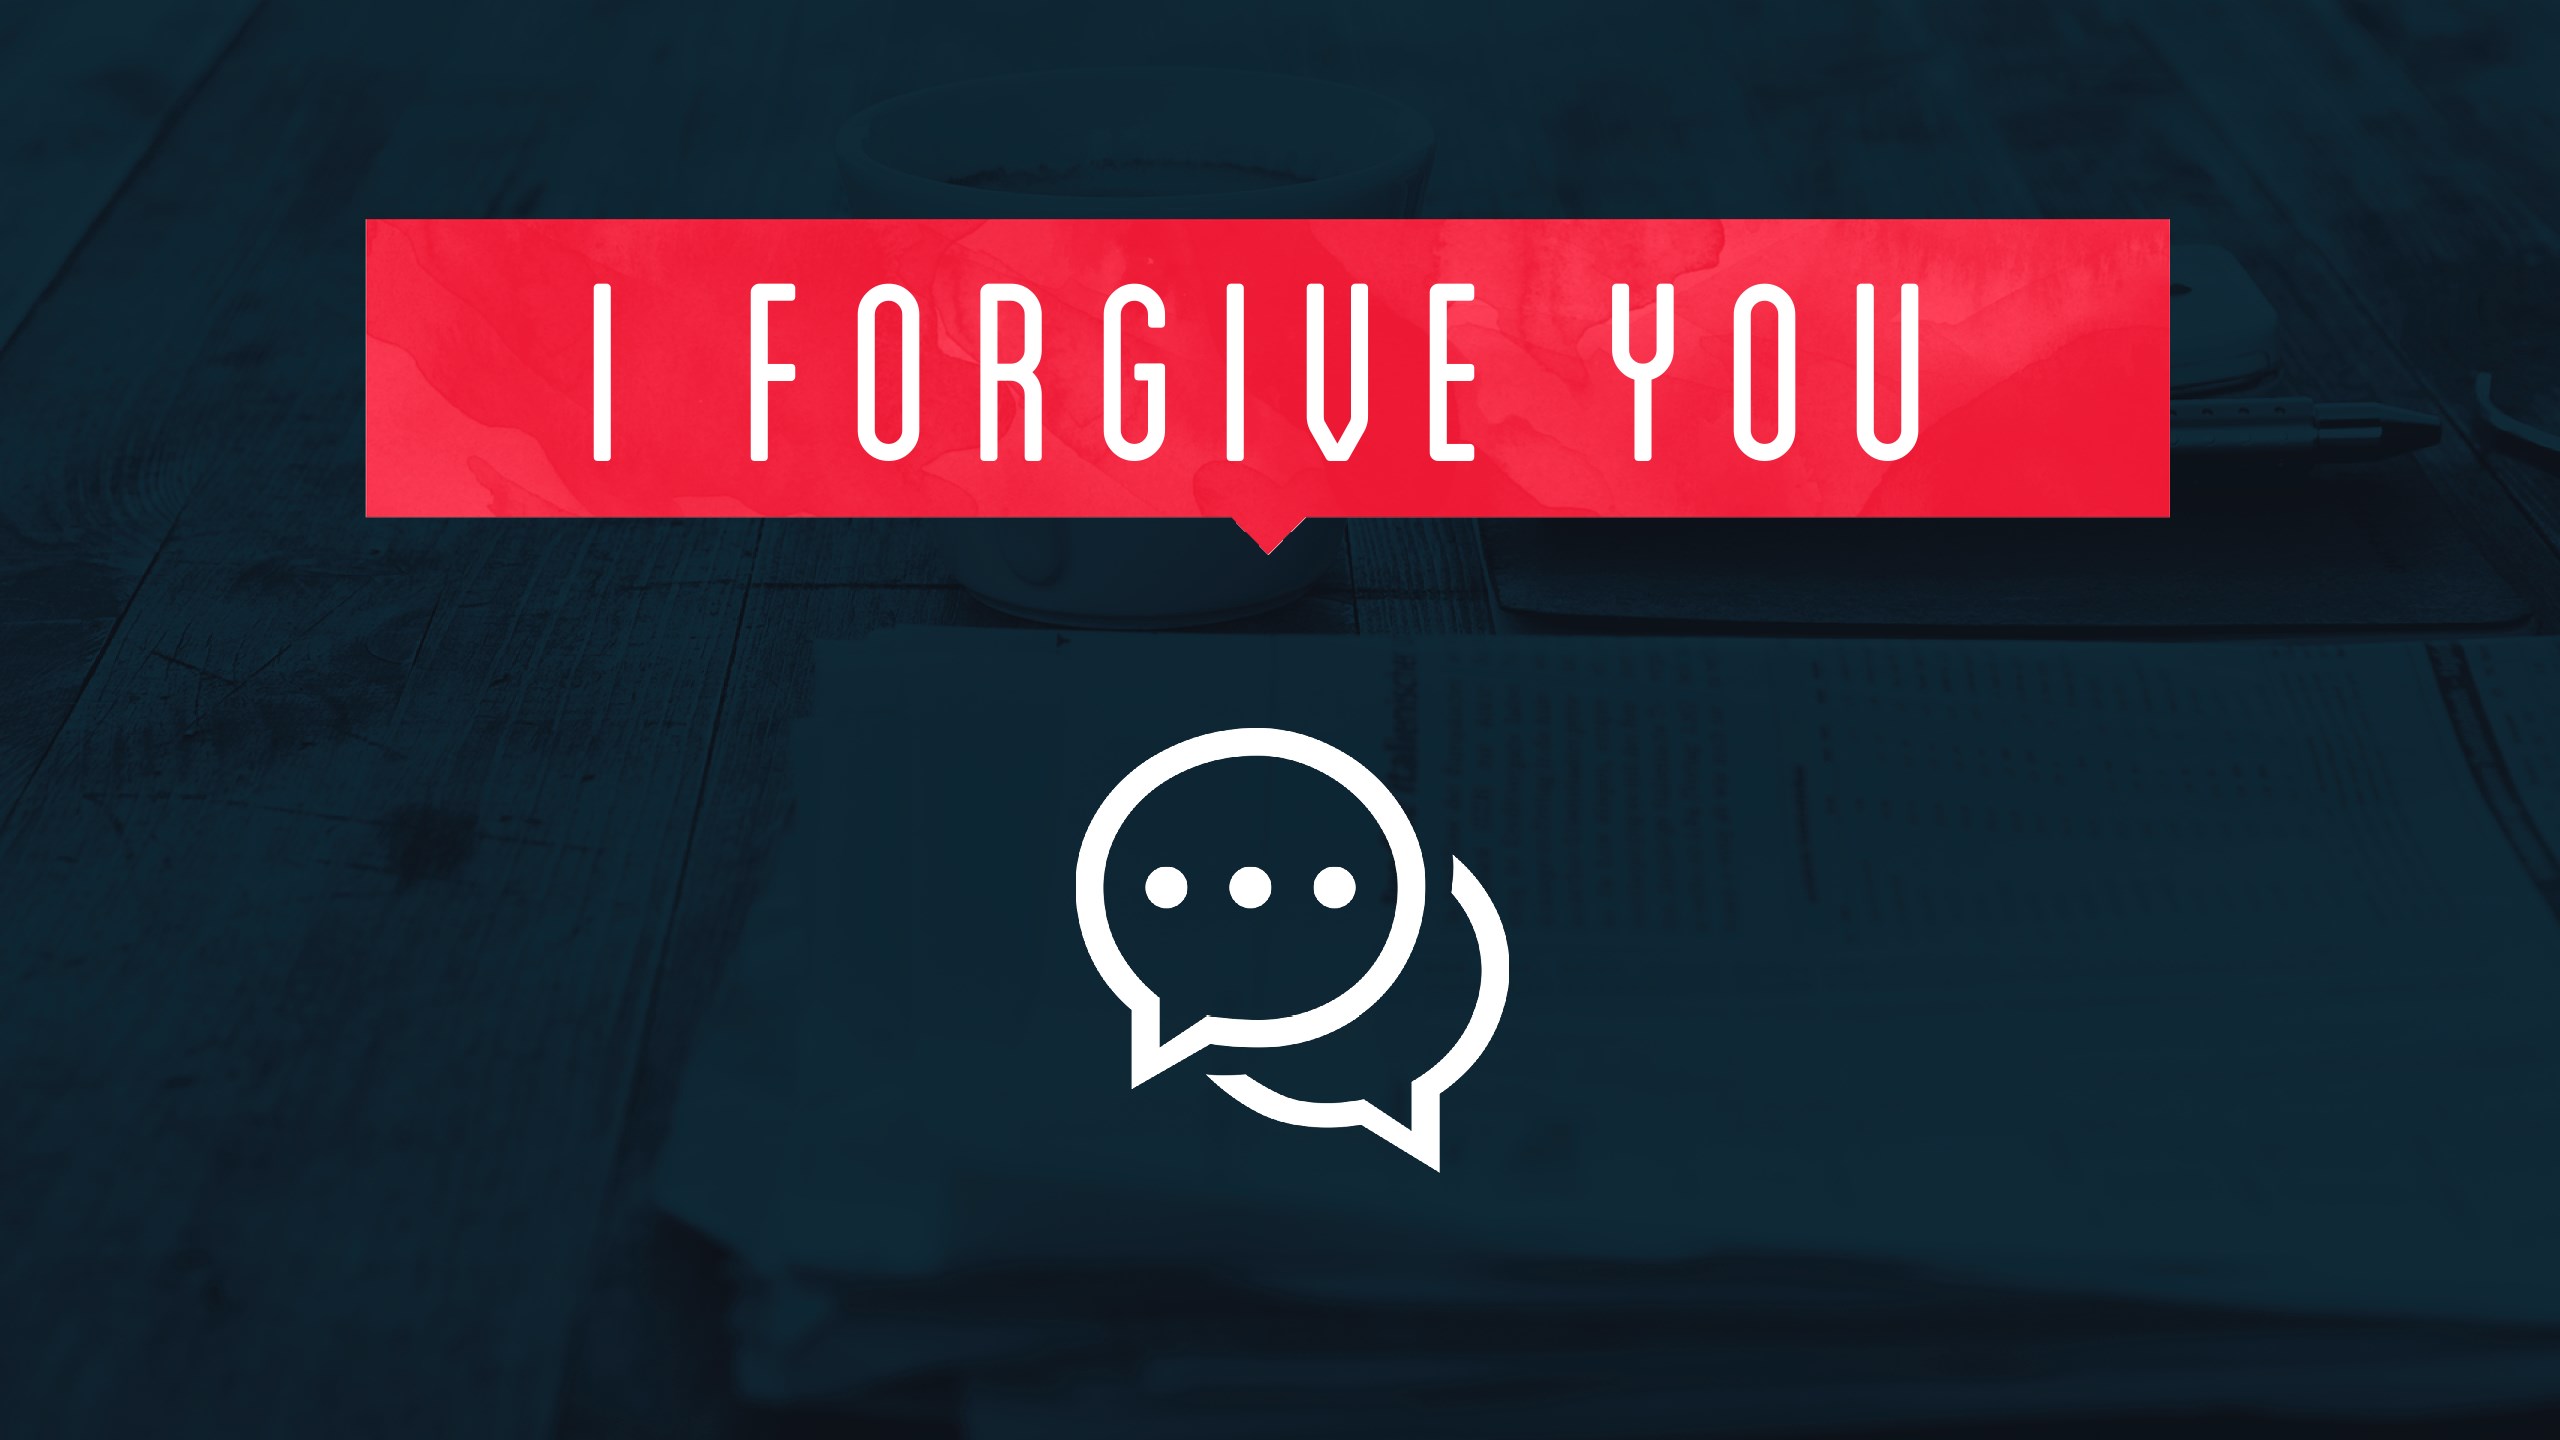 I Forgive You - Forgive Yourself